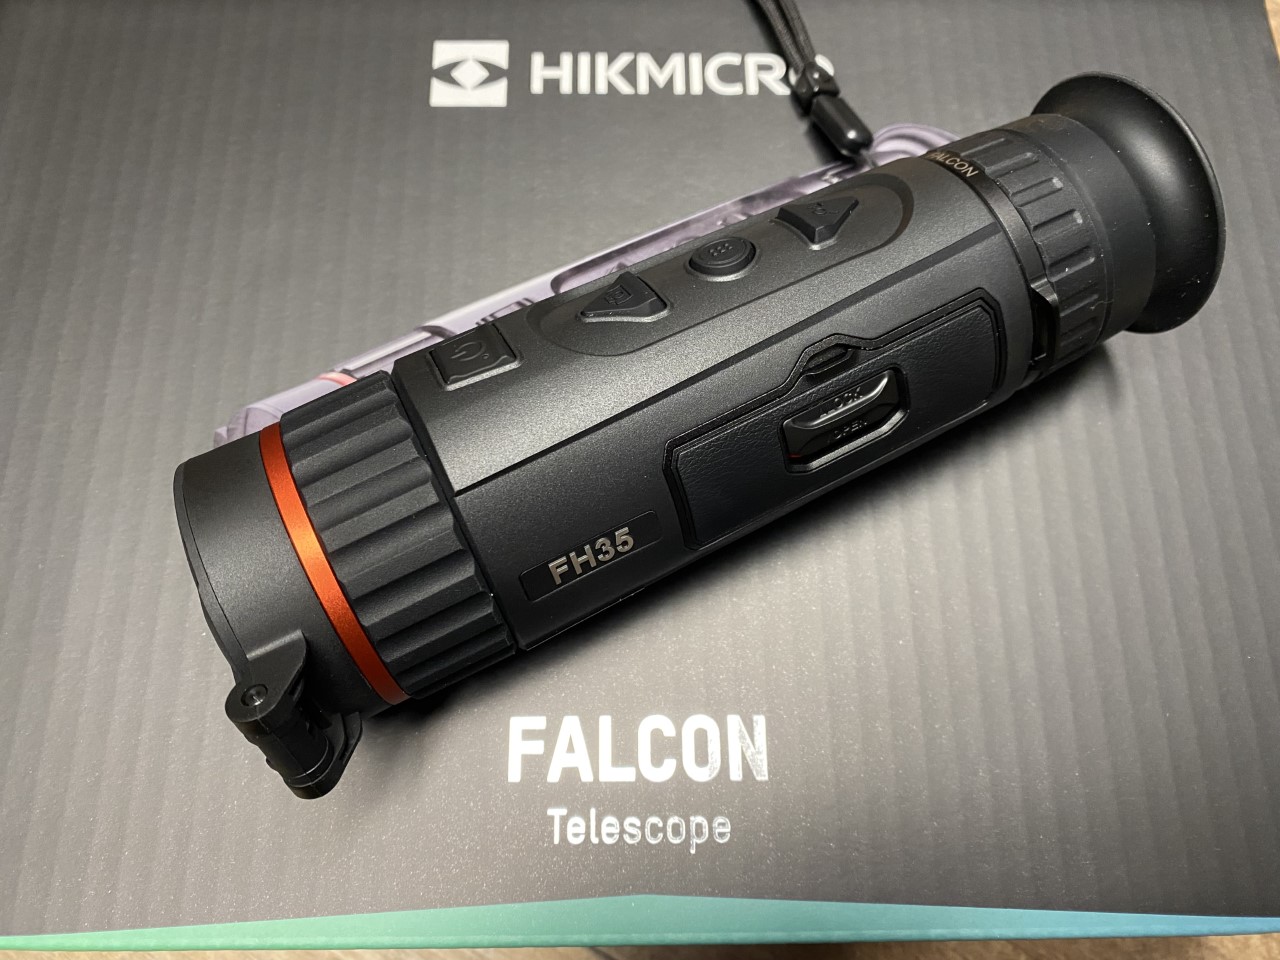 HIKMICRO Falcon FH35